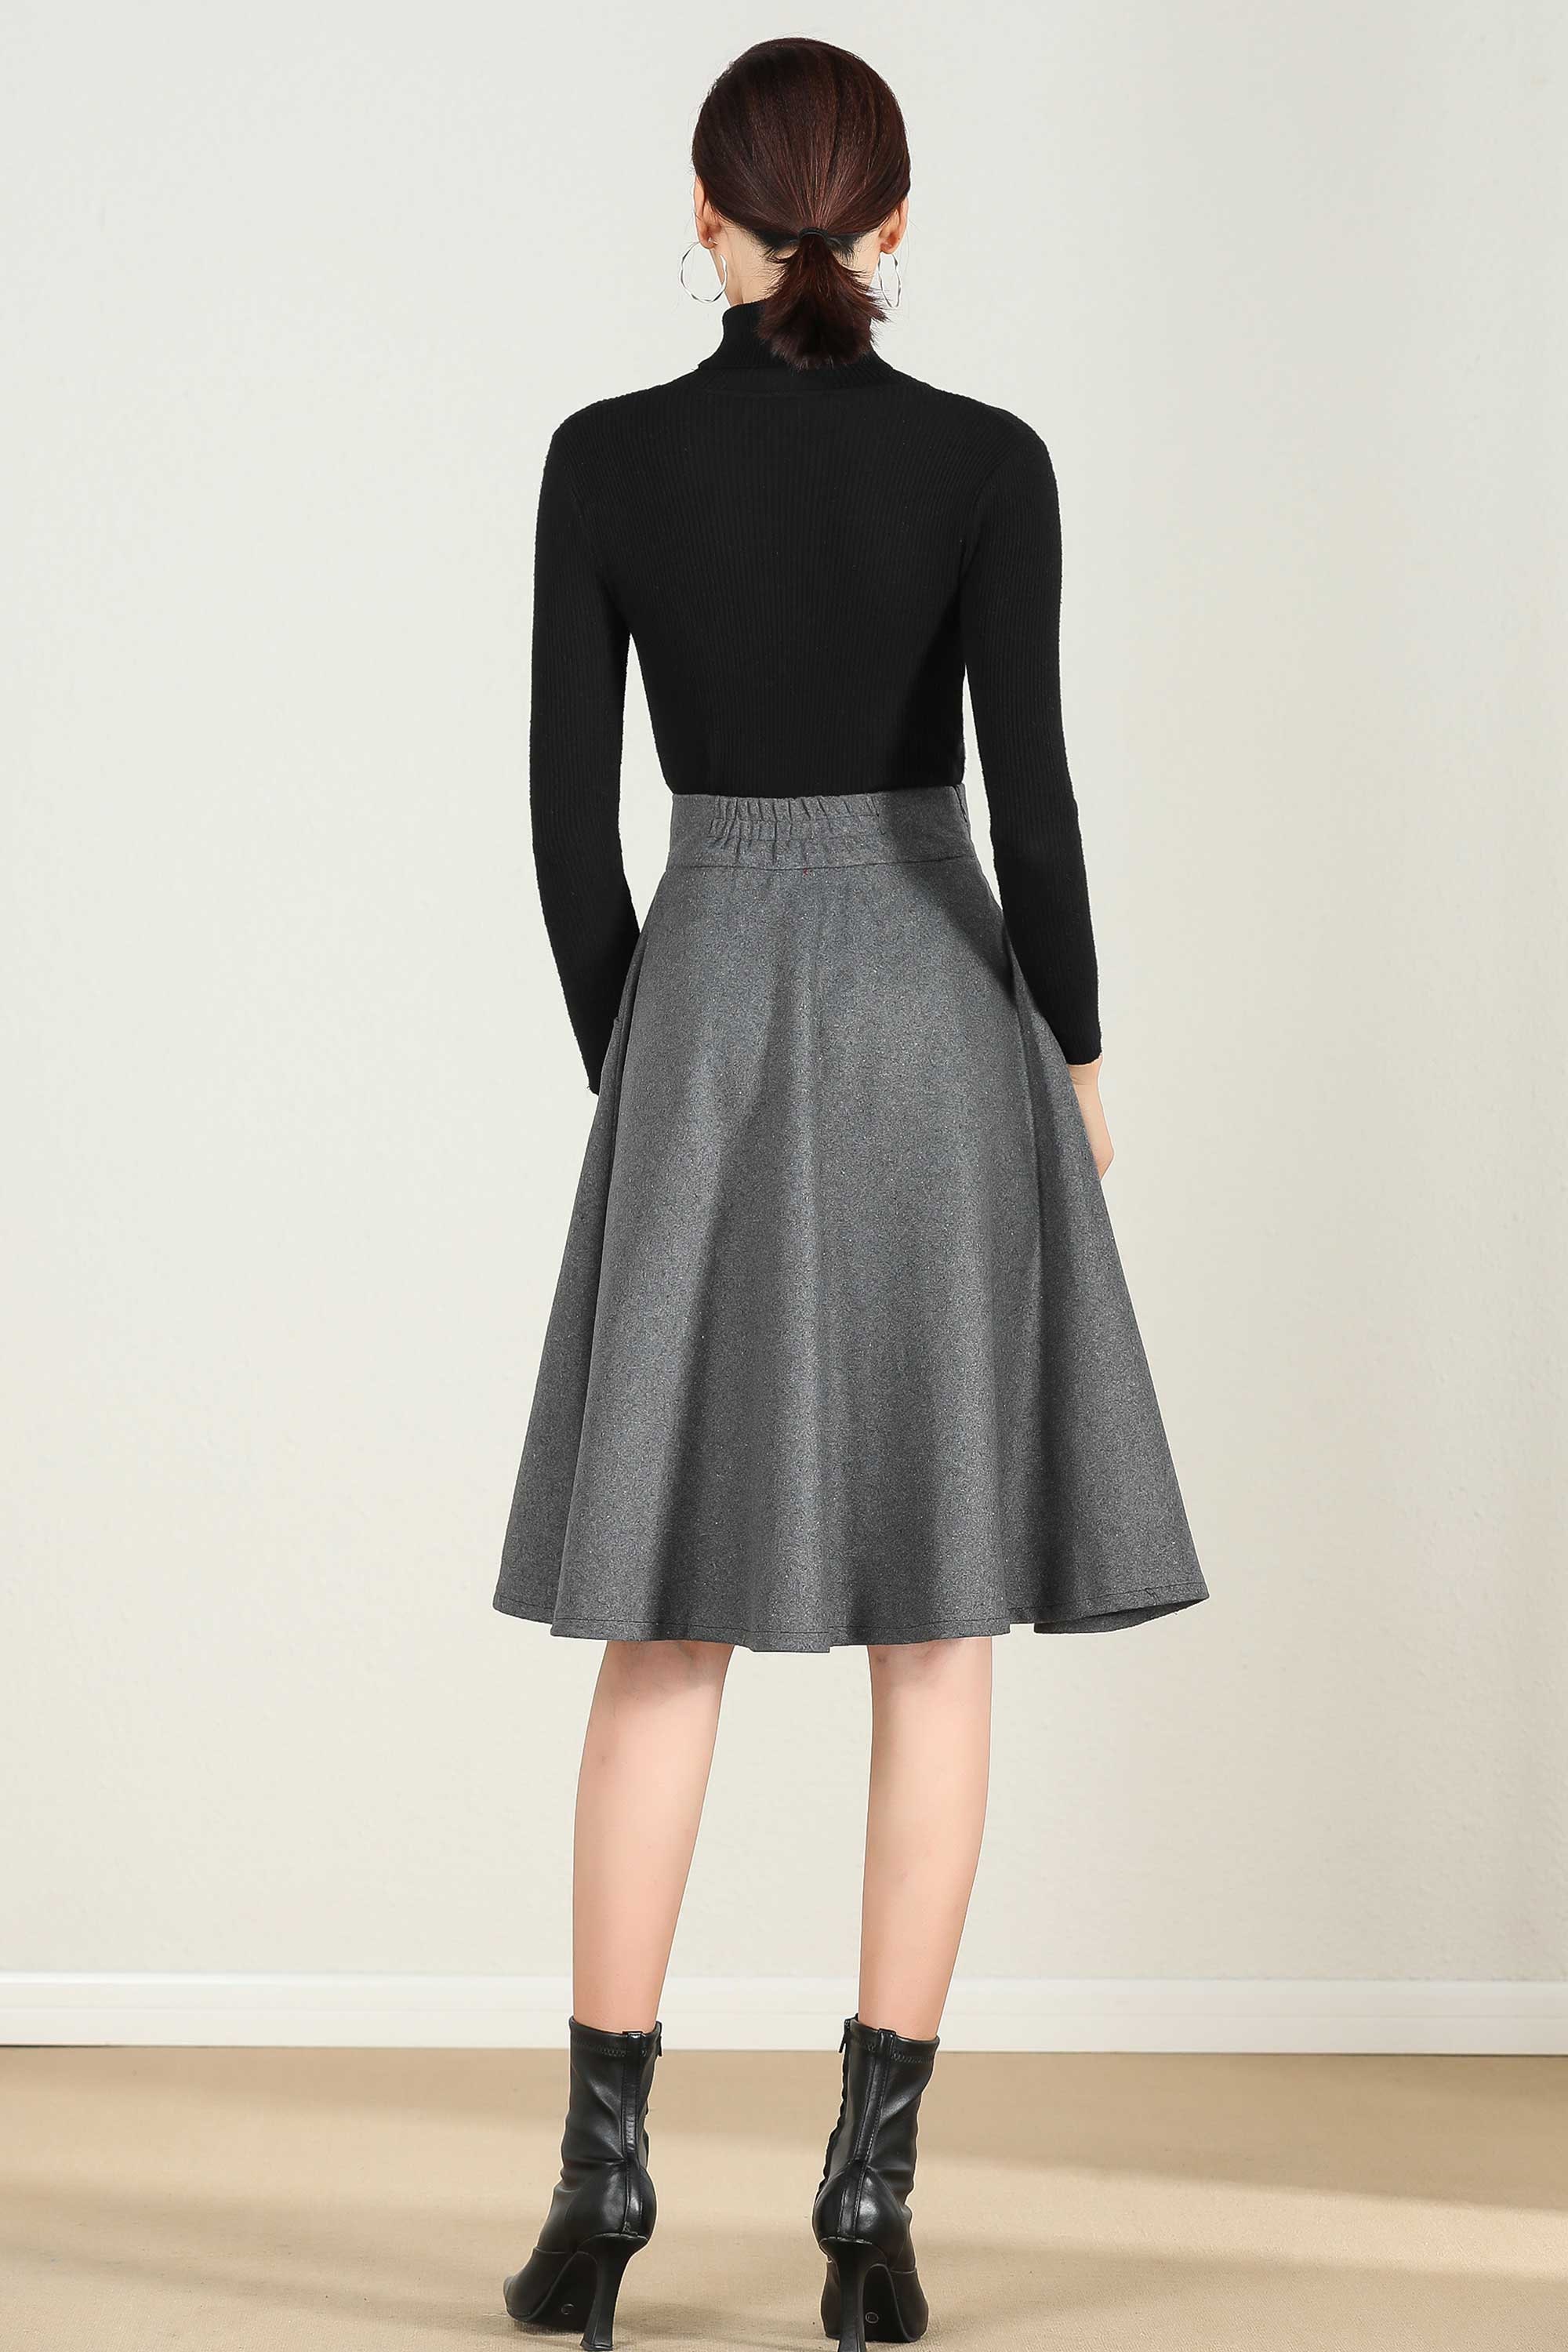 Short A Line Wool skirt in gray High waist skirt Midi skirt | Etsy